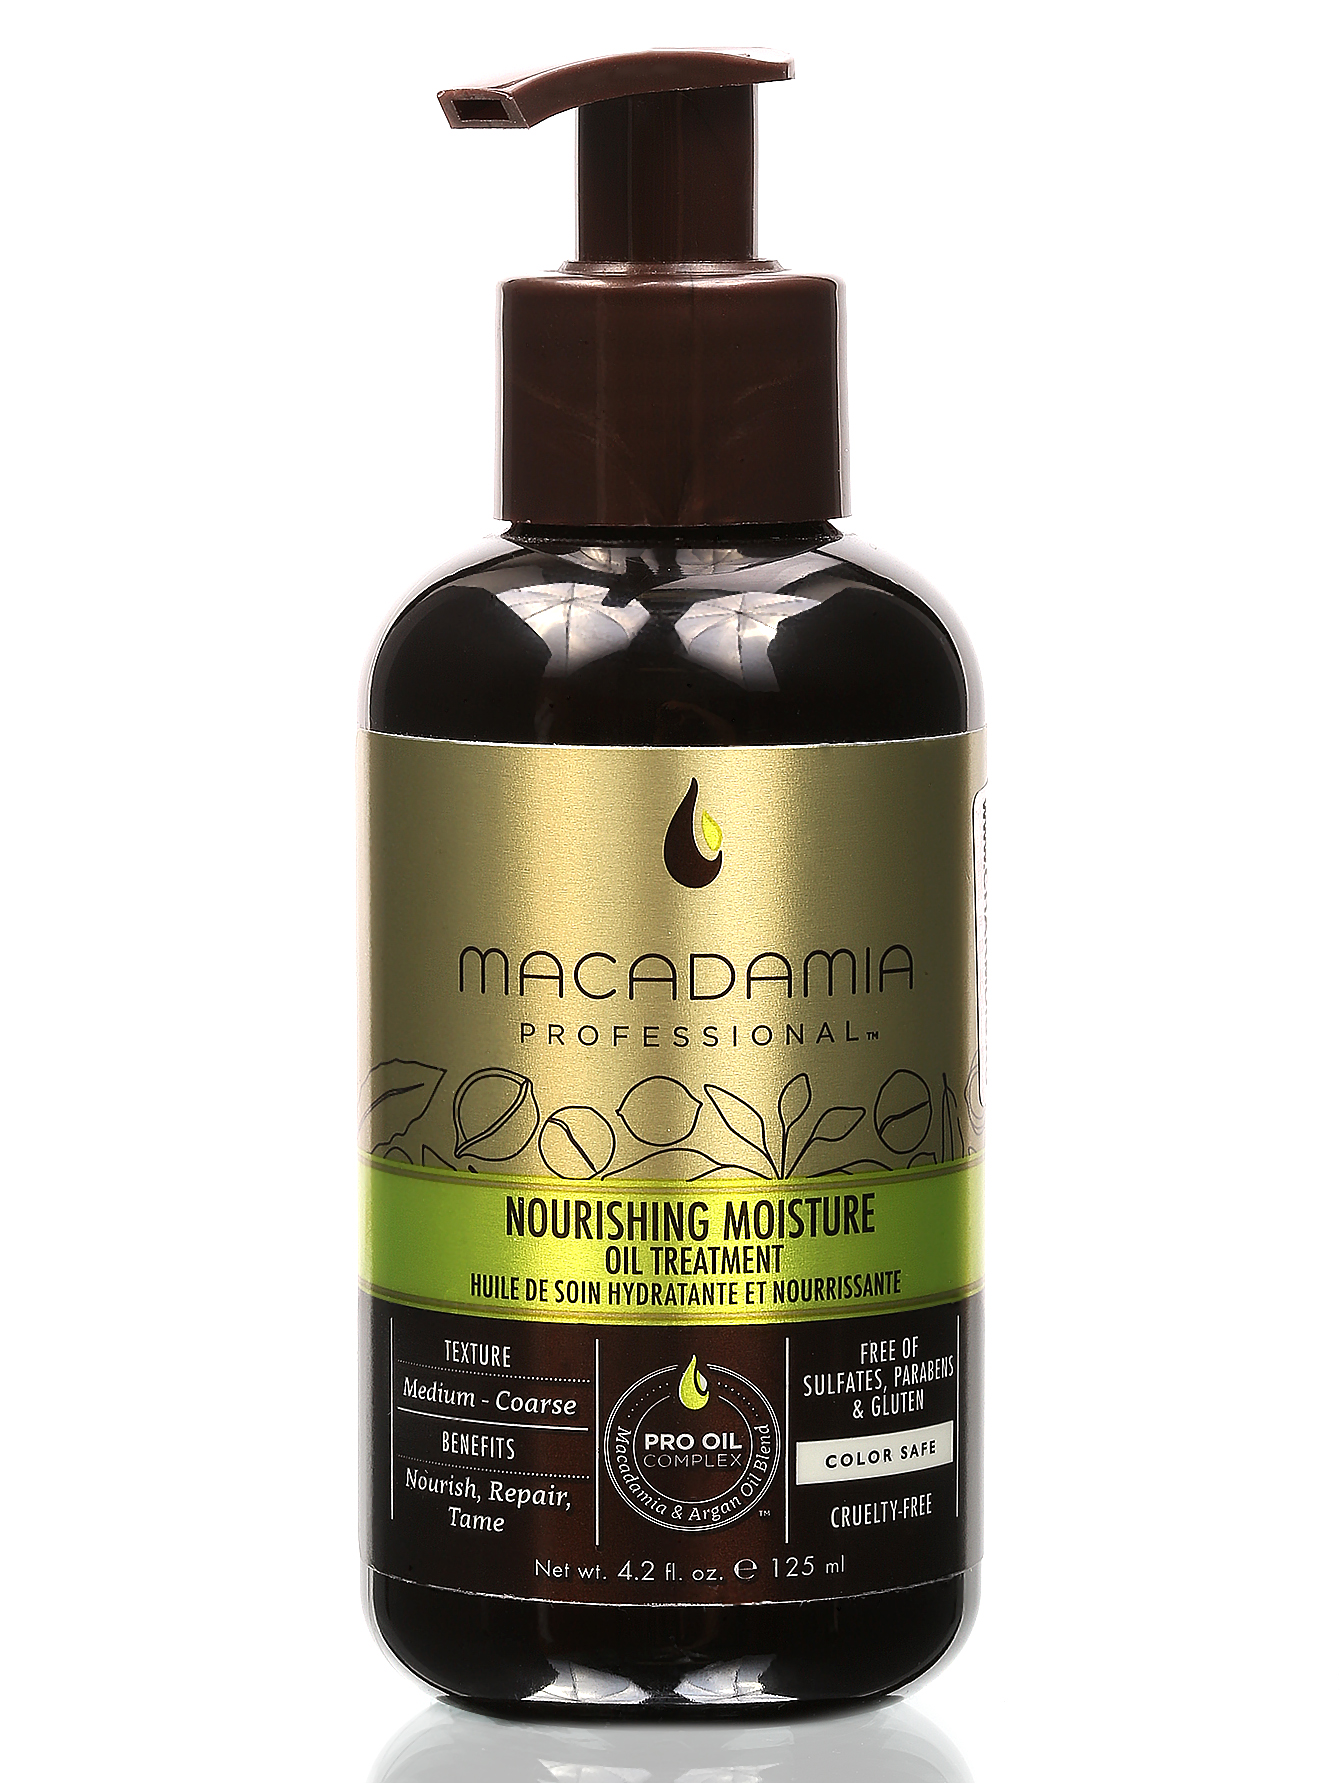 Восстанавливающий уход с маслом арганы и макадамии - Hair Care - Общий вид